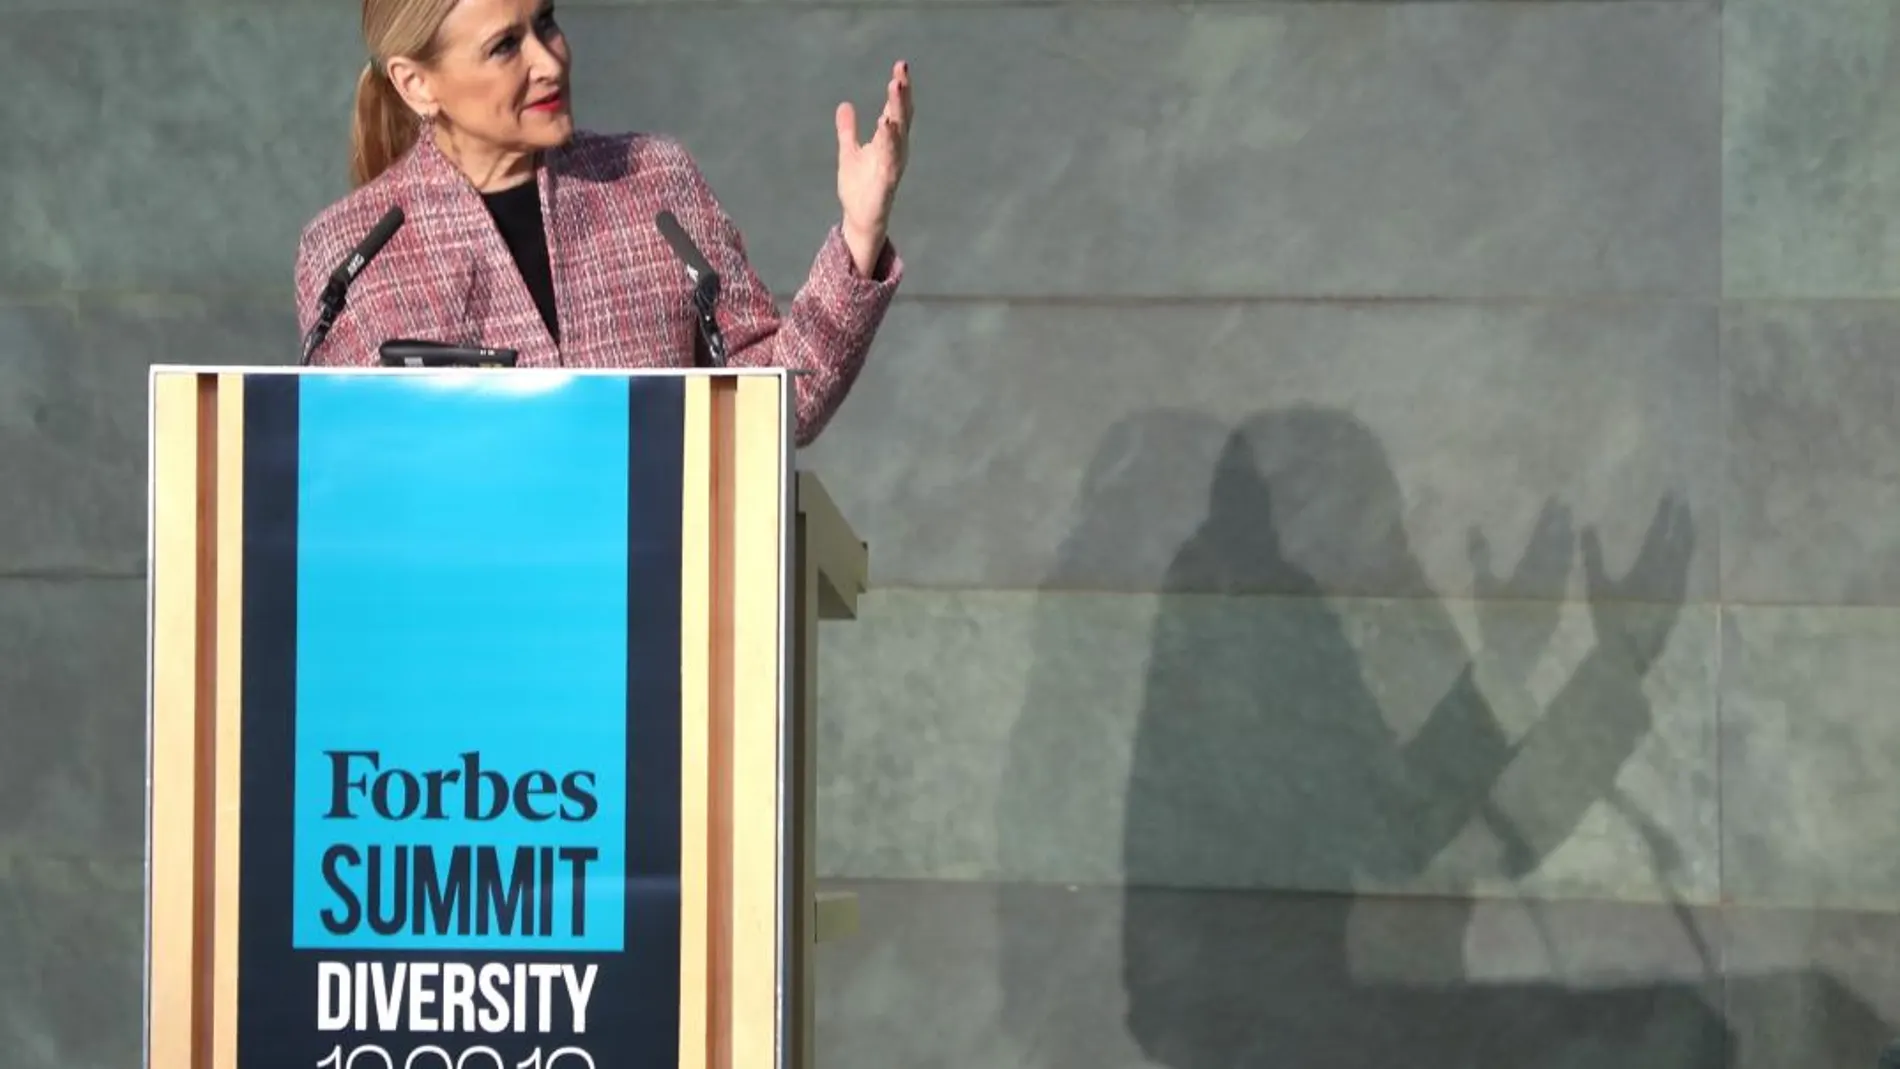 La presidenta de la Comunidad de Madrid, Cristina Cifuentes, pronuncia el discurso "Gestión de la divesidad: un reto para las empresas", con el que ha inaugurado hoy el Forbes Summit Diversity 2018